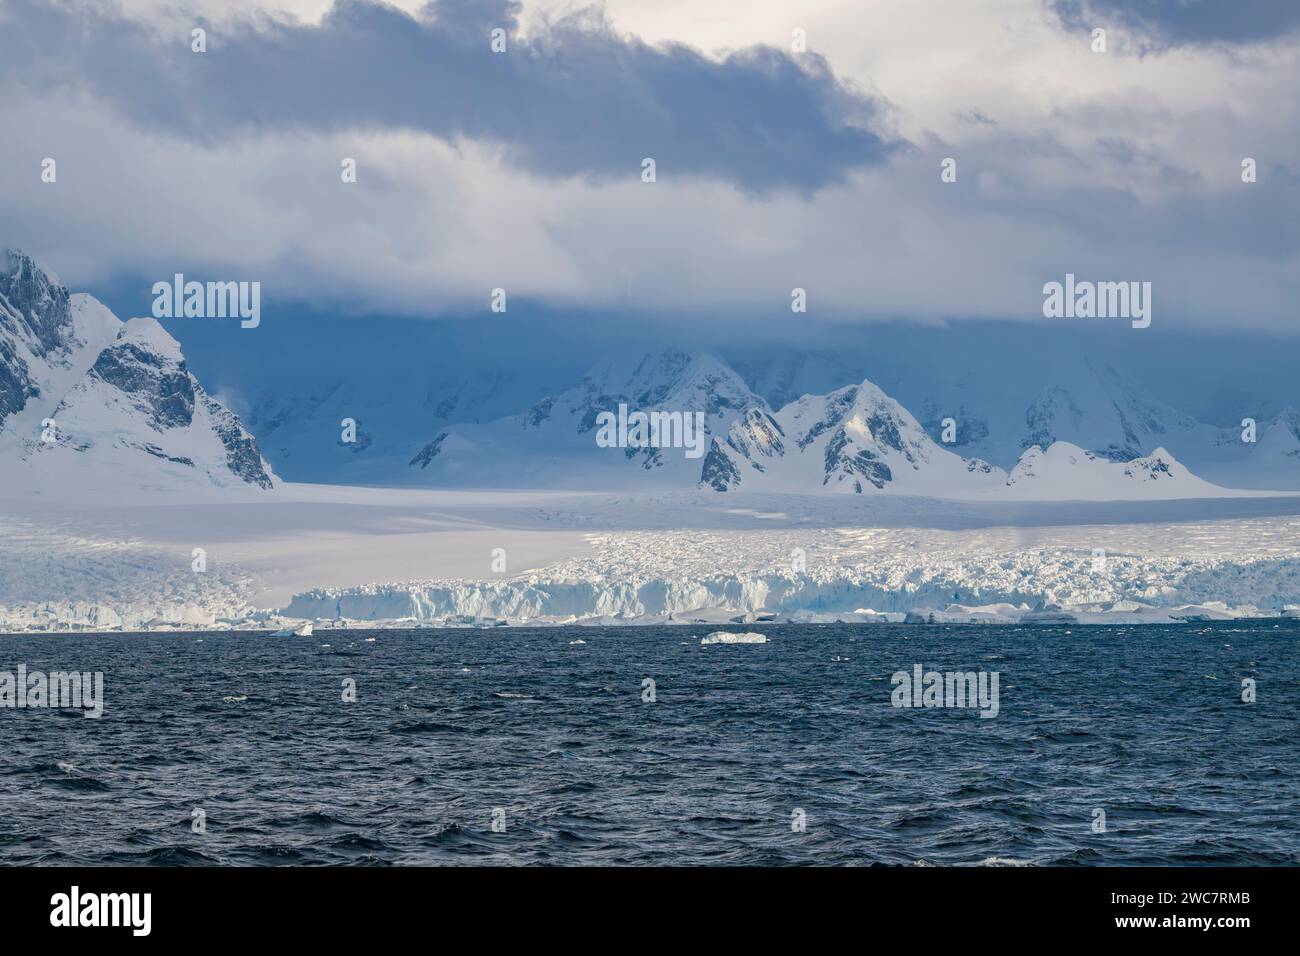 Brialmont Cove, antártida En un día nublado en primavera, hielo y la costa cubierta de nieve con arcos de hielo y cuevas nubes de la antártida claro, cielo azul Foto de stock